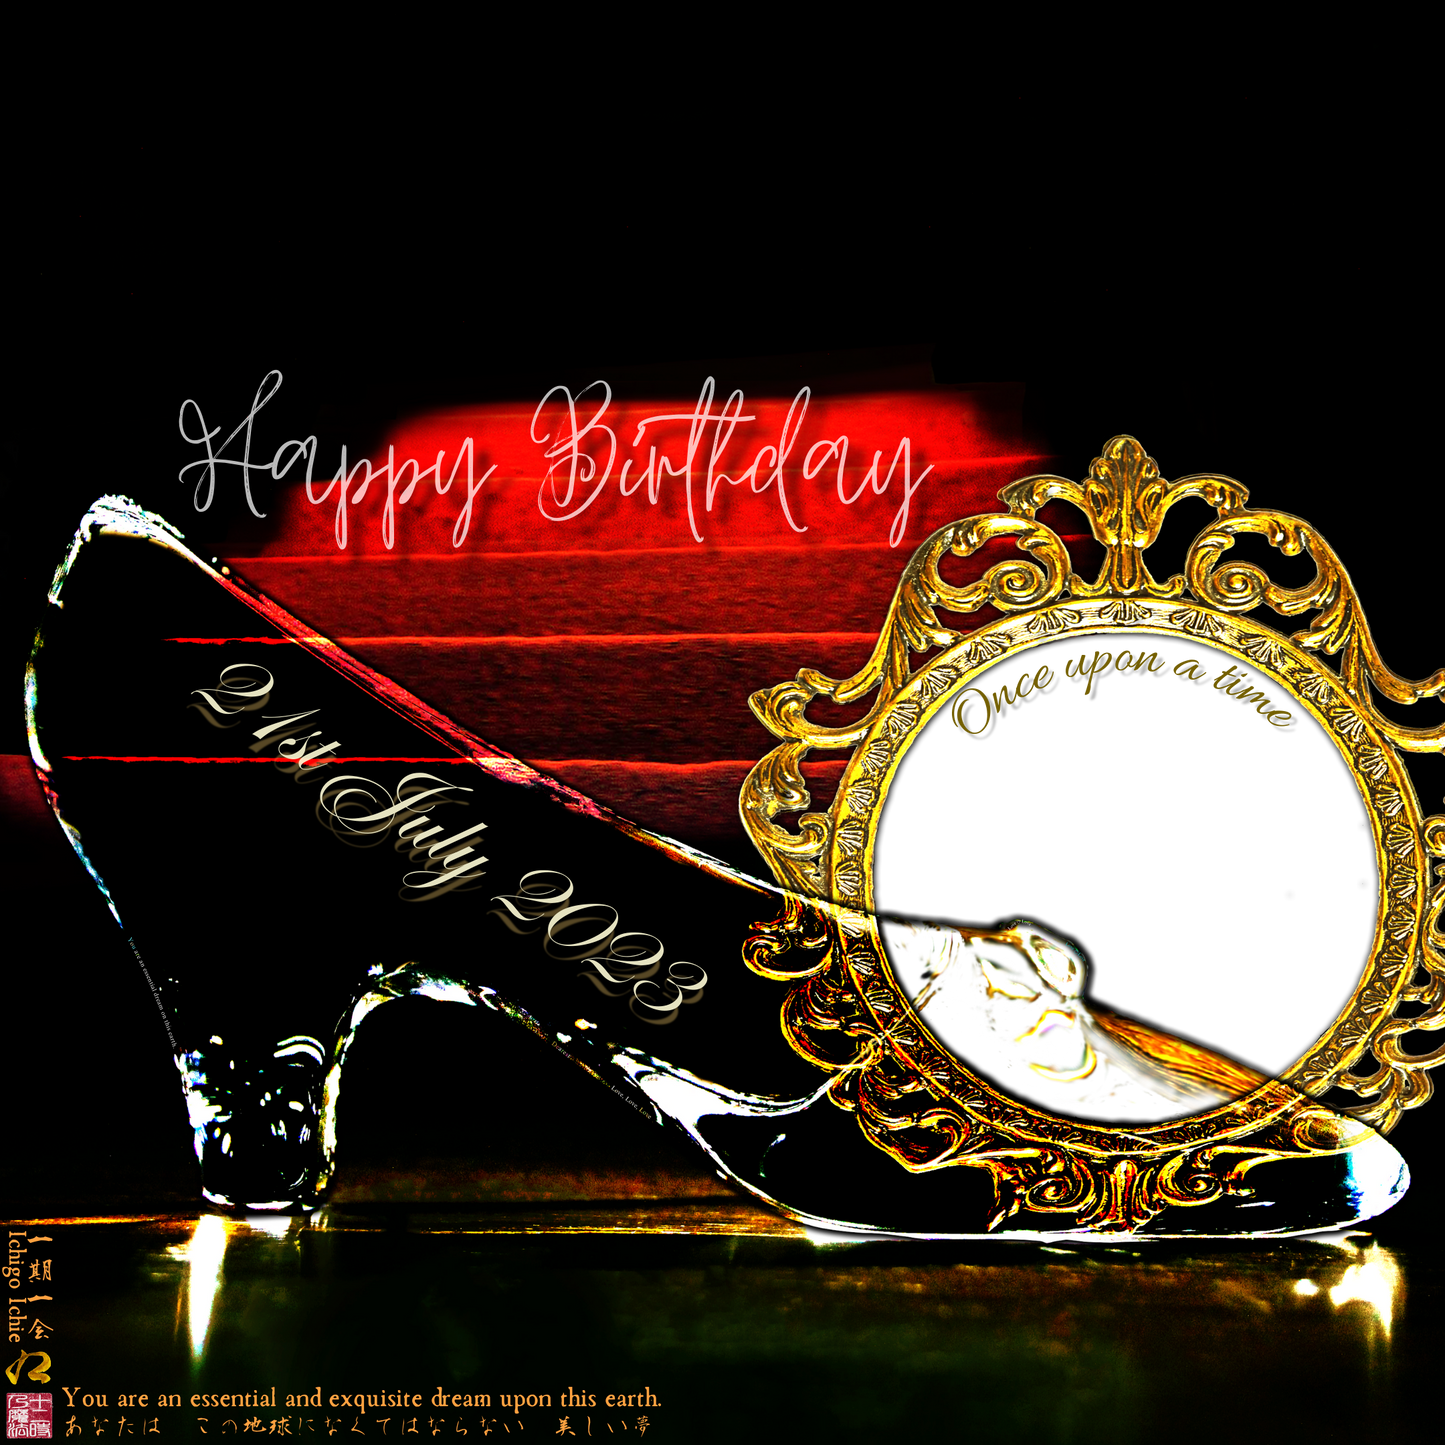 Happy Birthday Glass Slipper "Ichigo Ichie" 21st July 2023 the Right (1-of-1) NFT Art